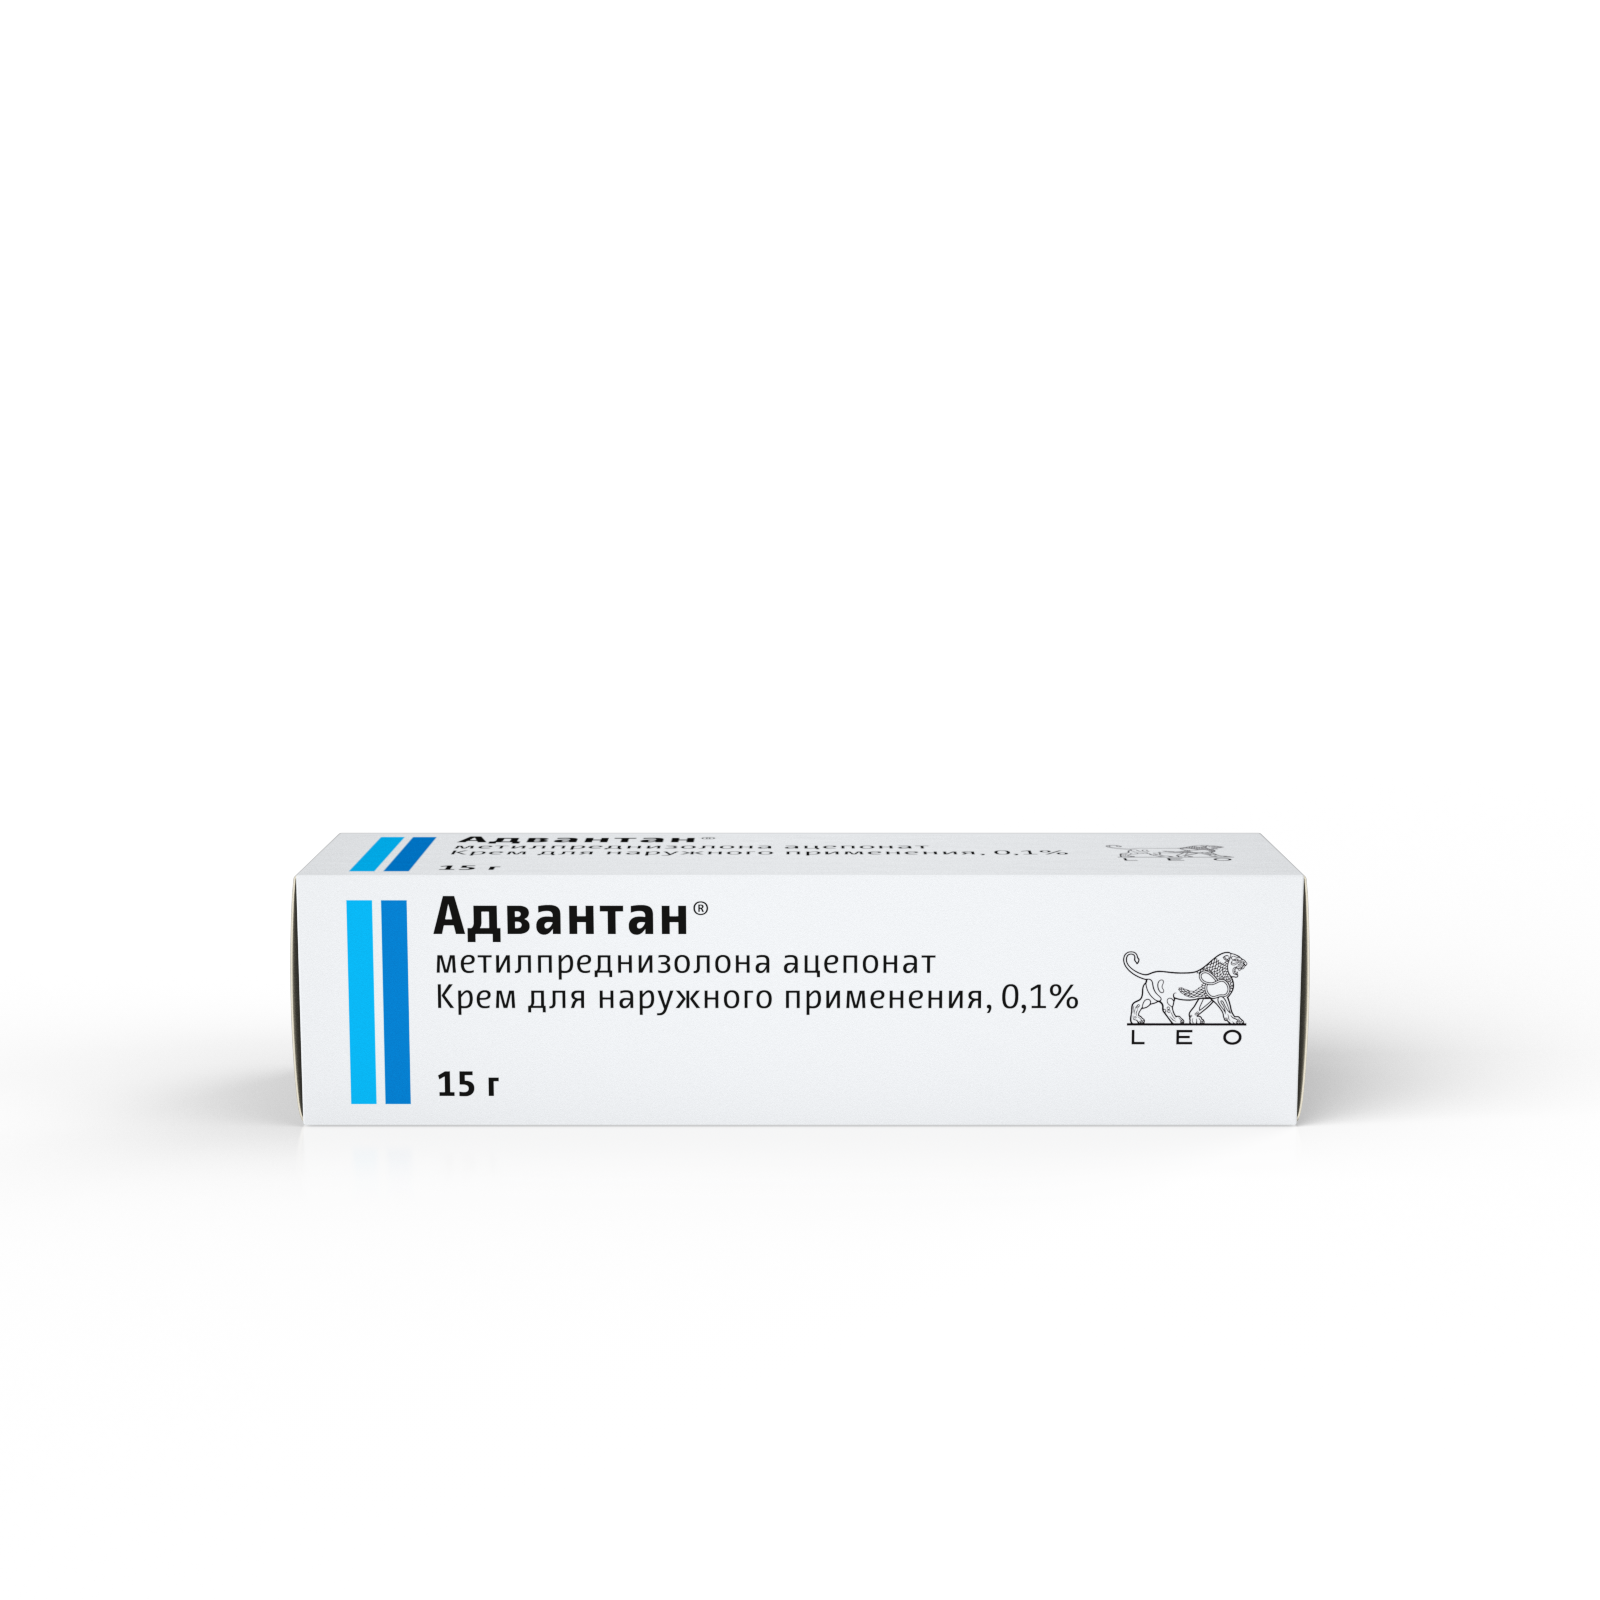 Адвантан, крем 0.1%, 15 г адвантан крем для наружного применения 0 1% 15г